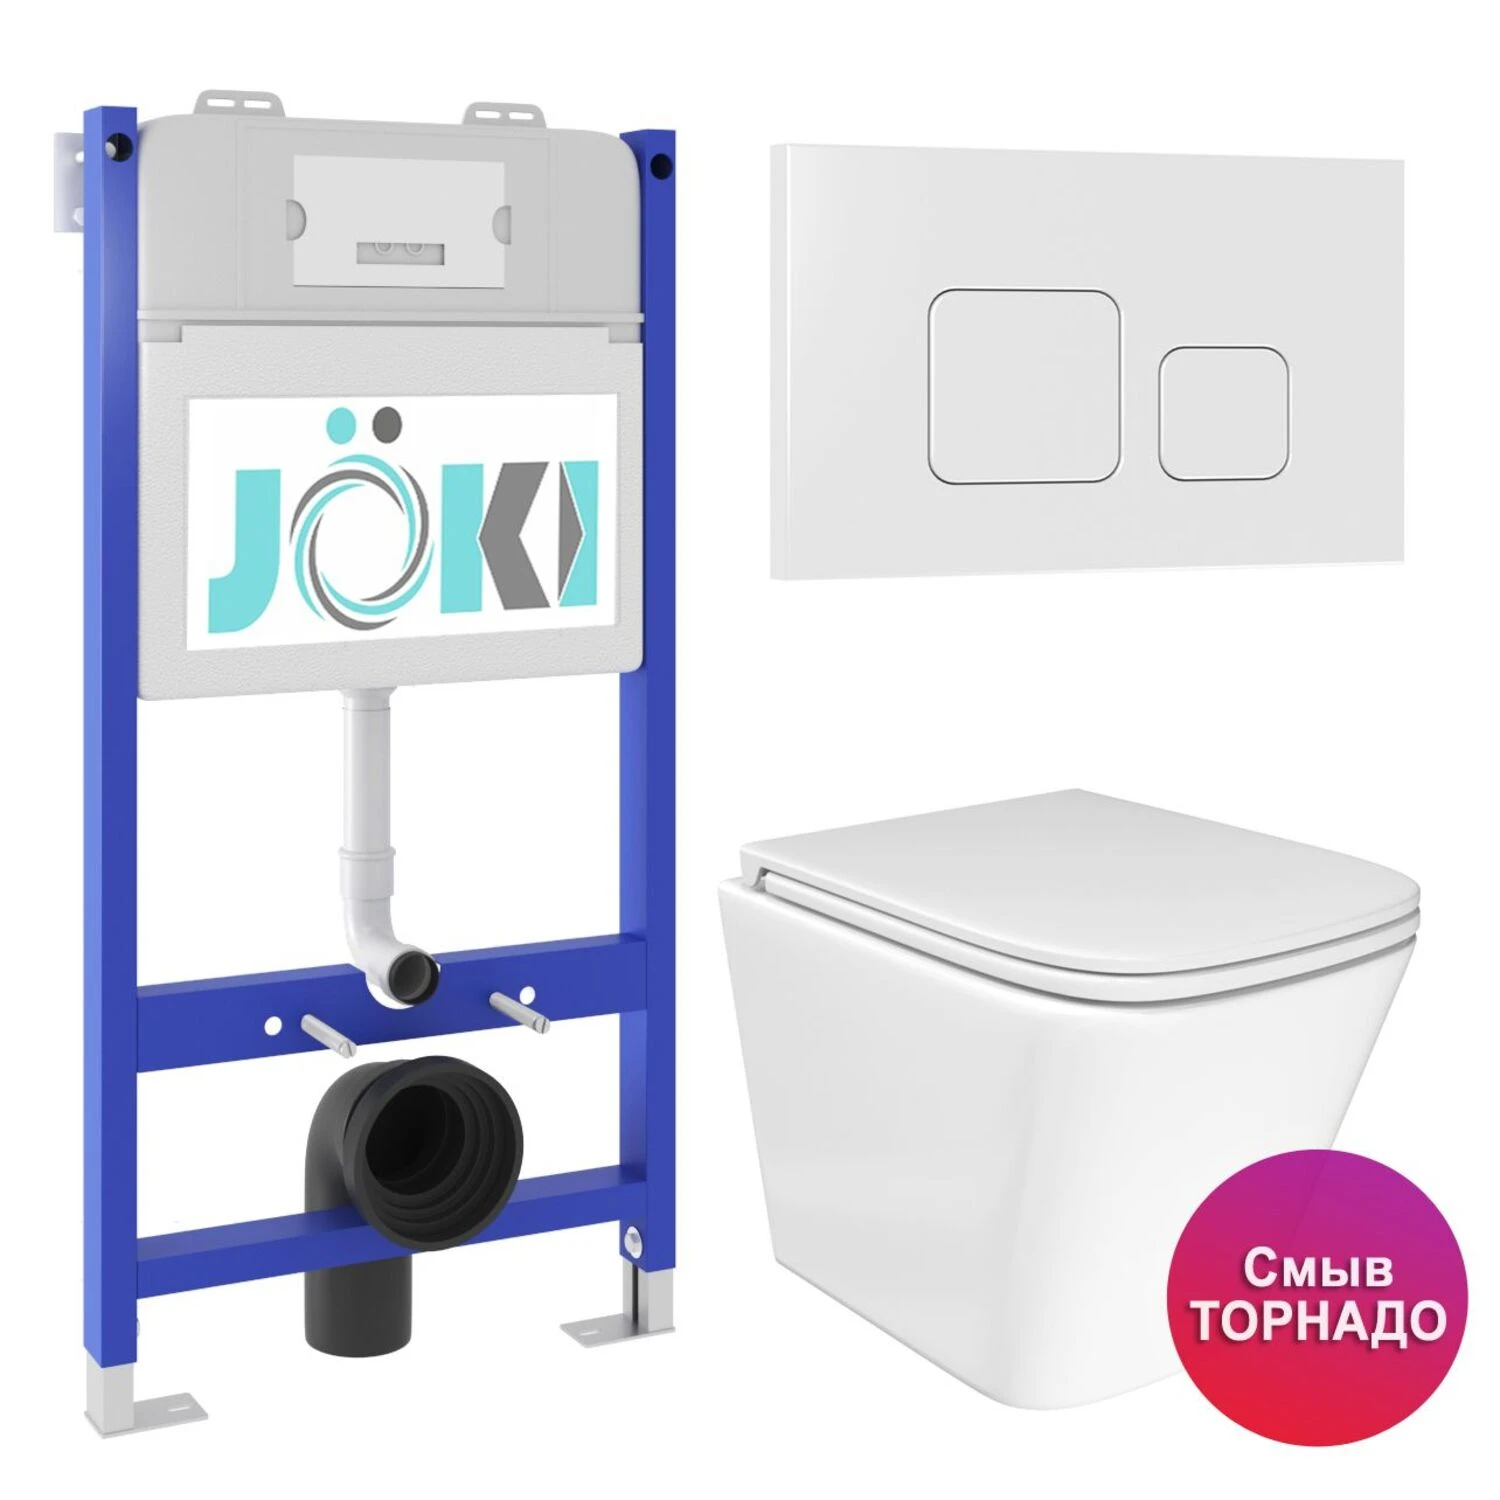 Комплект: JOKI Инсталляция JK03351+Кнопка JK021531WM белый+Verna T JK3031025 унитаз белый, смыв Торнадо